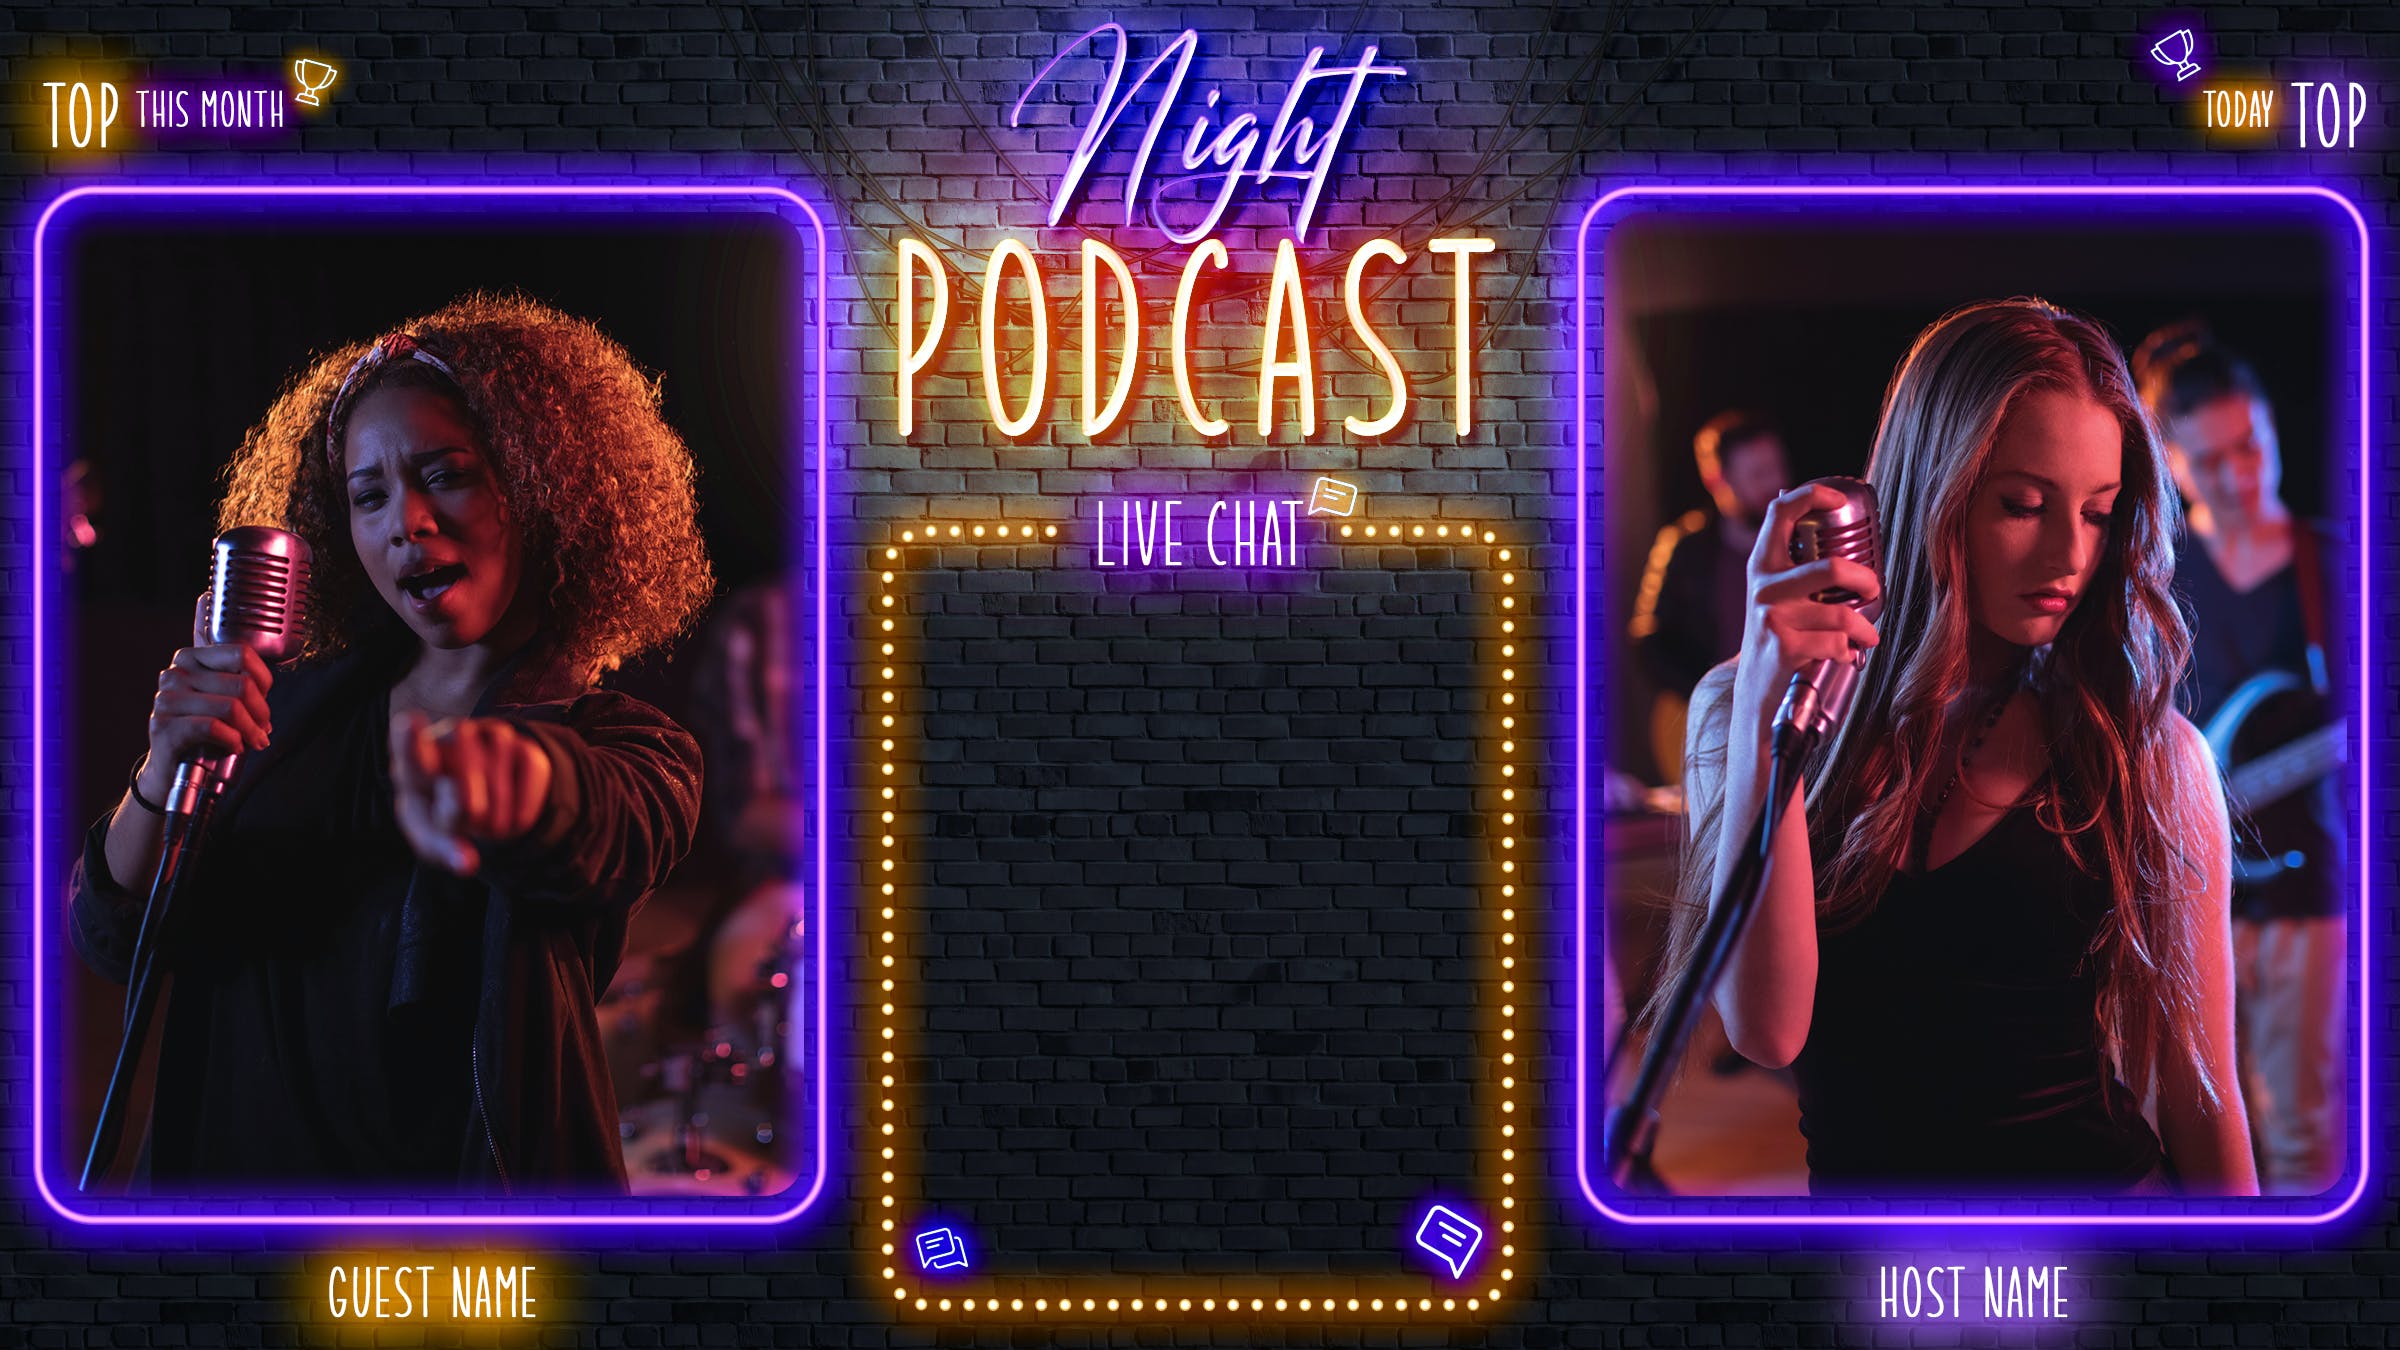 深夜音乐频道Twitch平台界面设计模板 Night Podcast – Twitch Overlay 设计素材 第2张